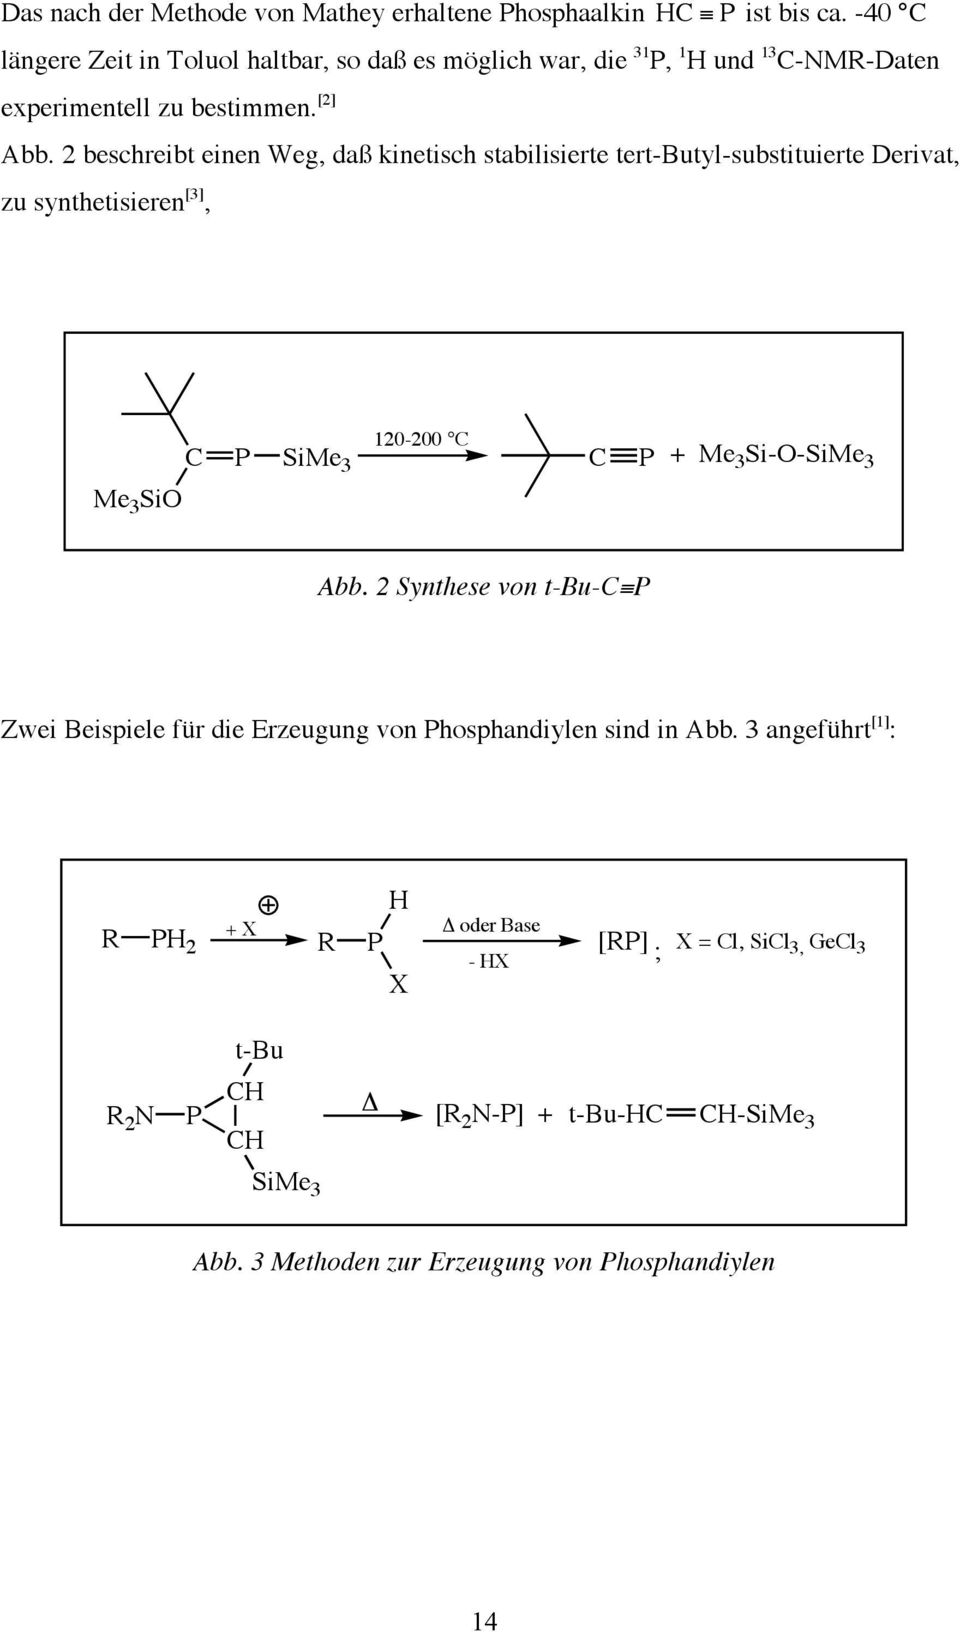 2 beschreibt einen Weg, daß kinetisch stabilisierte tert-butyl-substituierte Derivat, zu synthetisieren [3], Me 3 SiO C P 120-200 C SiMe 3 C P + Me 3 Si-O-SiMe 3